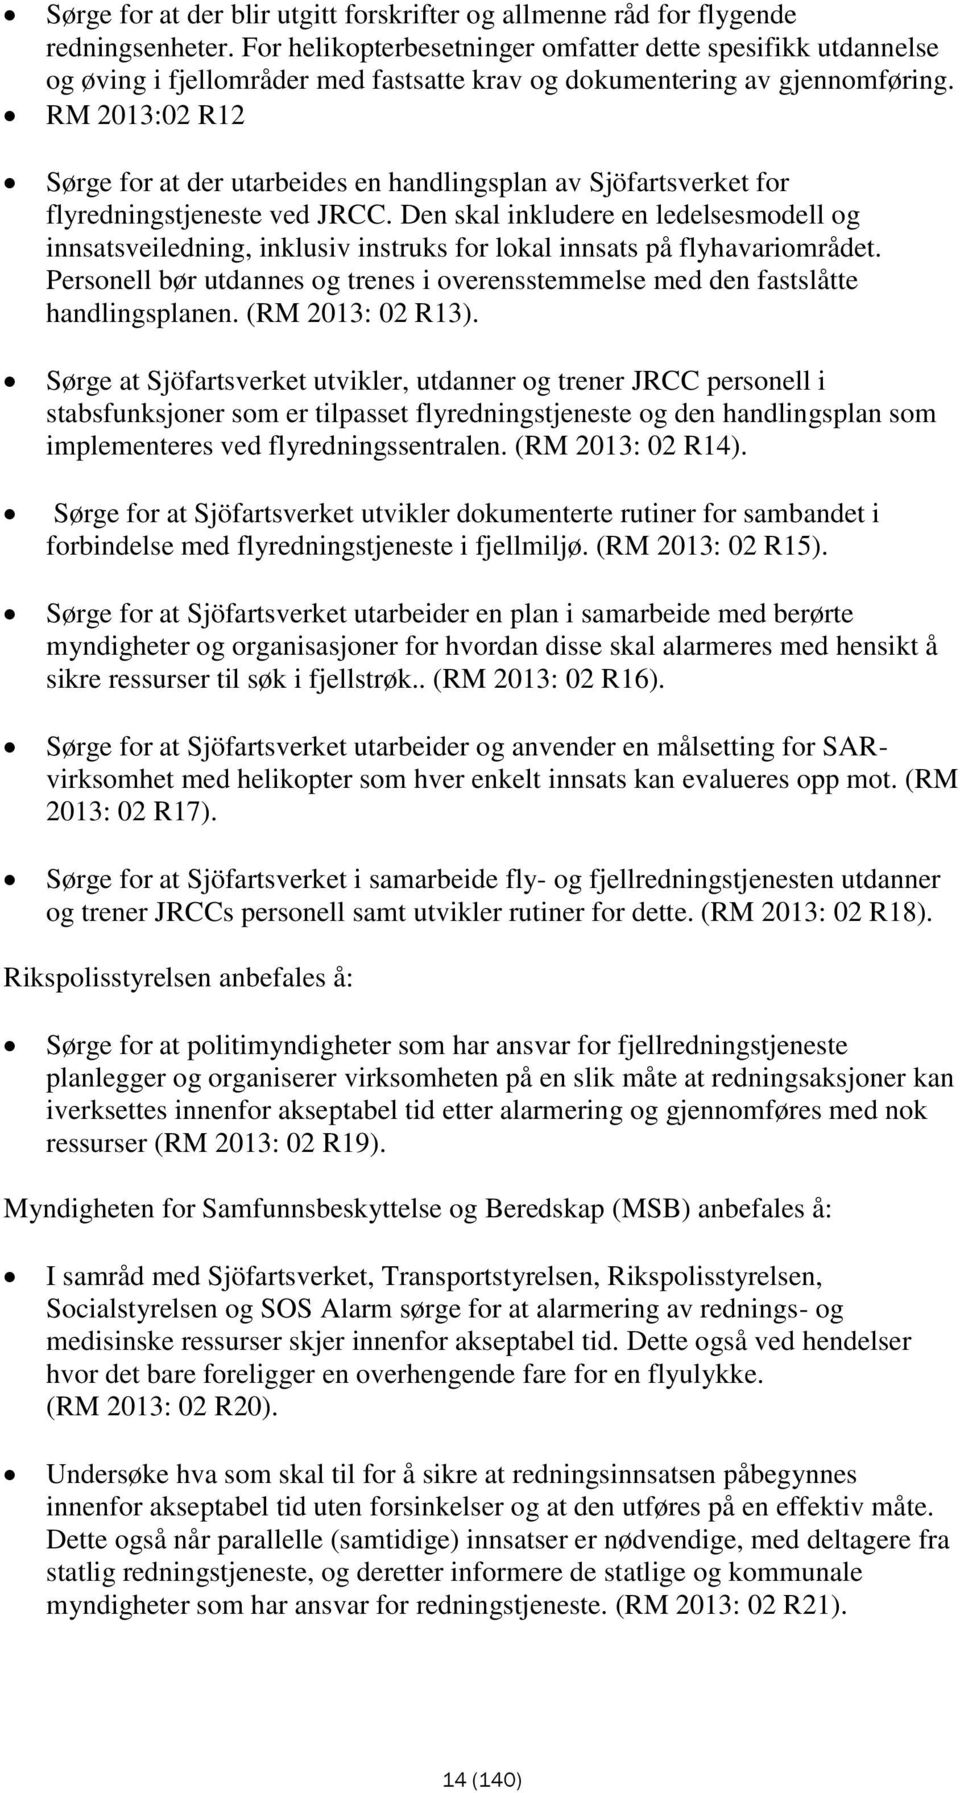 RM 2013:02 R12 Sørge for at der utarbeides en handlingsplan av Sjöfartsverket for flyredningstjeneste ved JRCC.